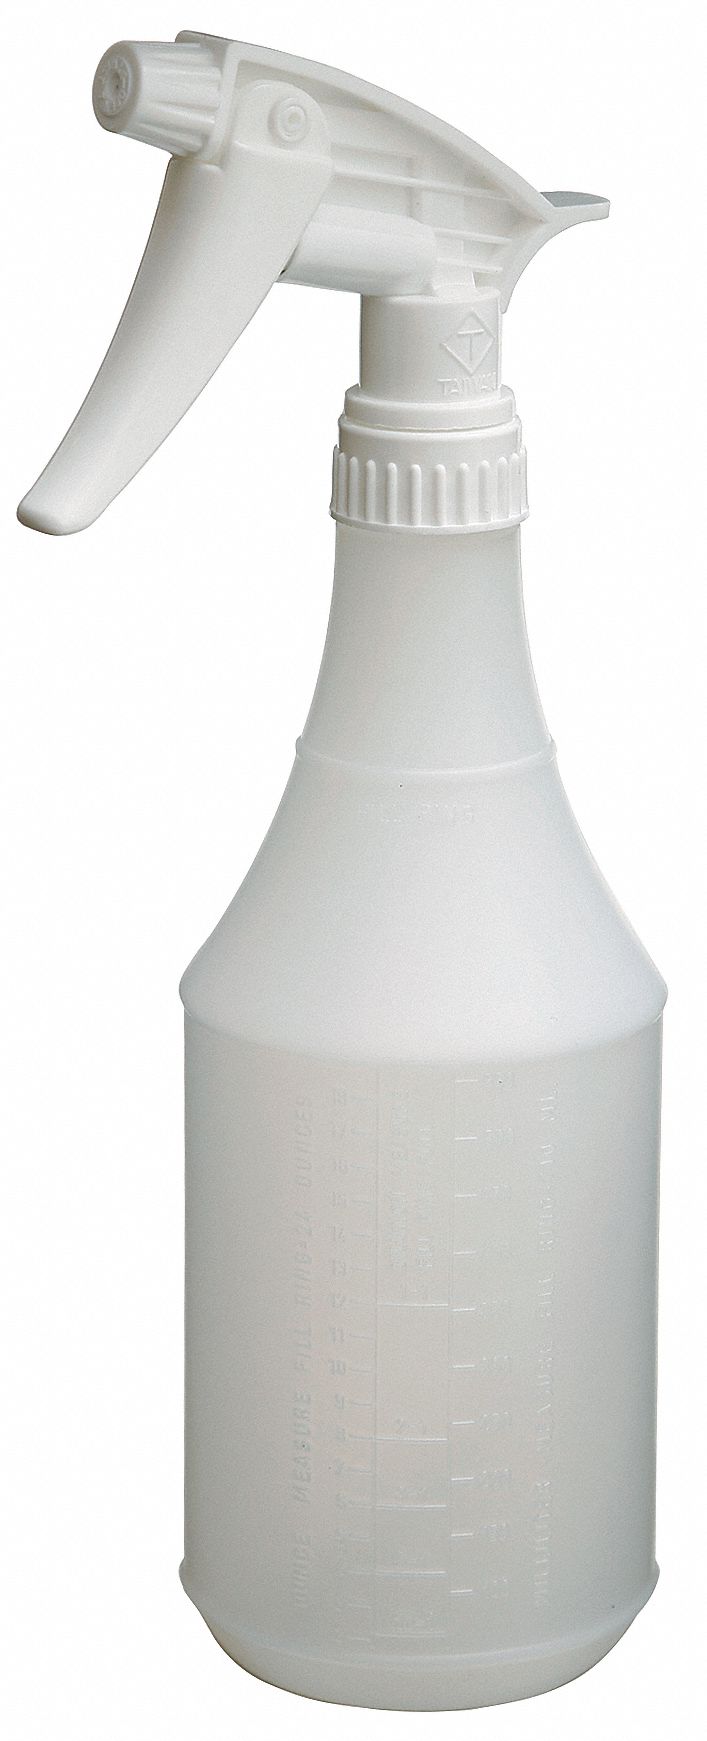 Grainger Approved Trigger Spray Bottle 24 Oz White No Imprinting Mist Stream Dispensing Type Pk 3 3lfp9 Grainger